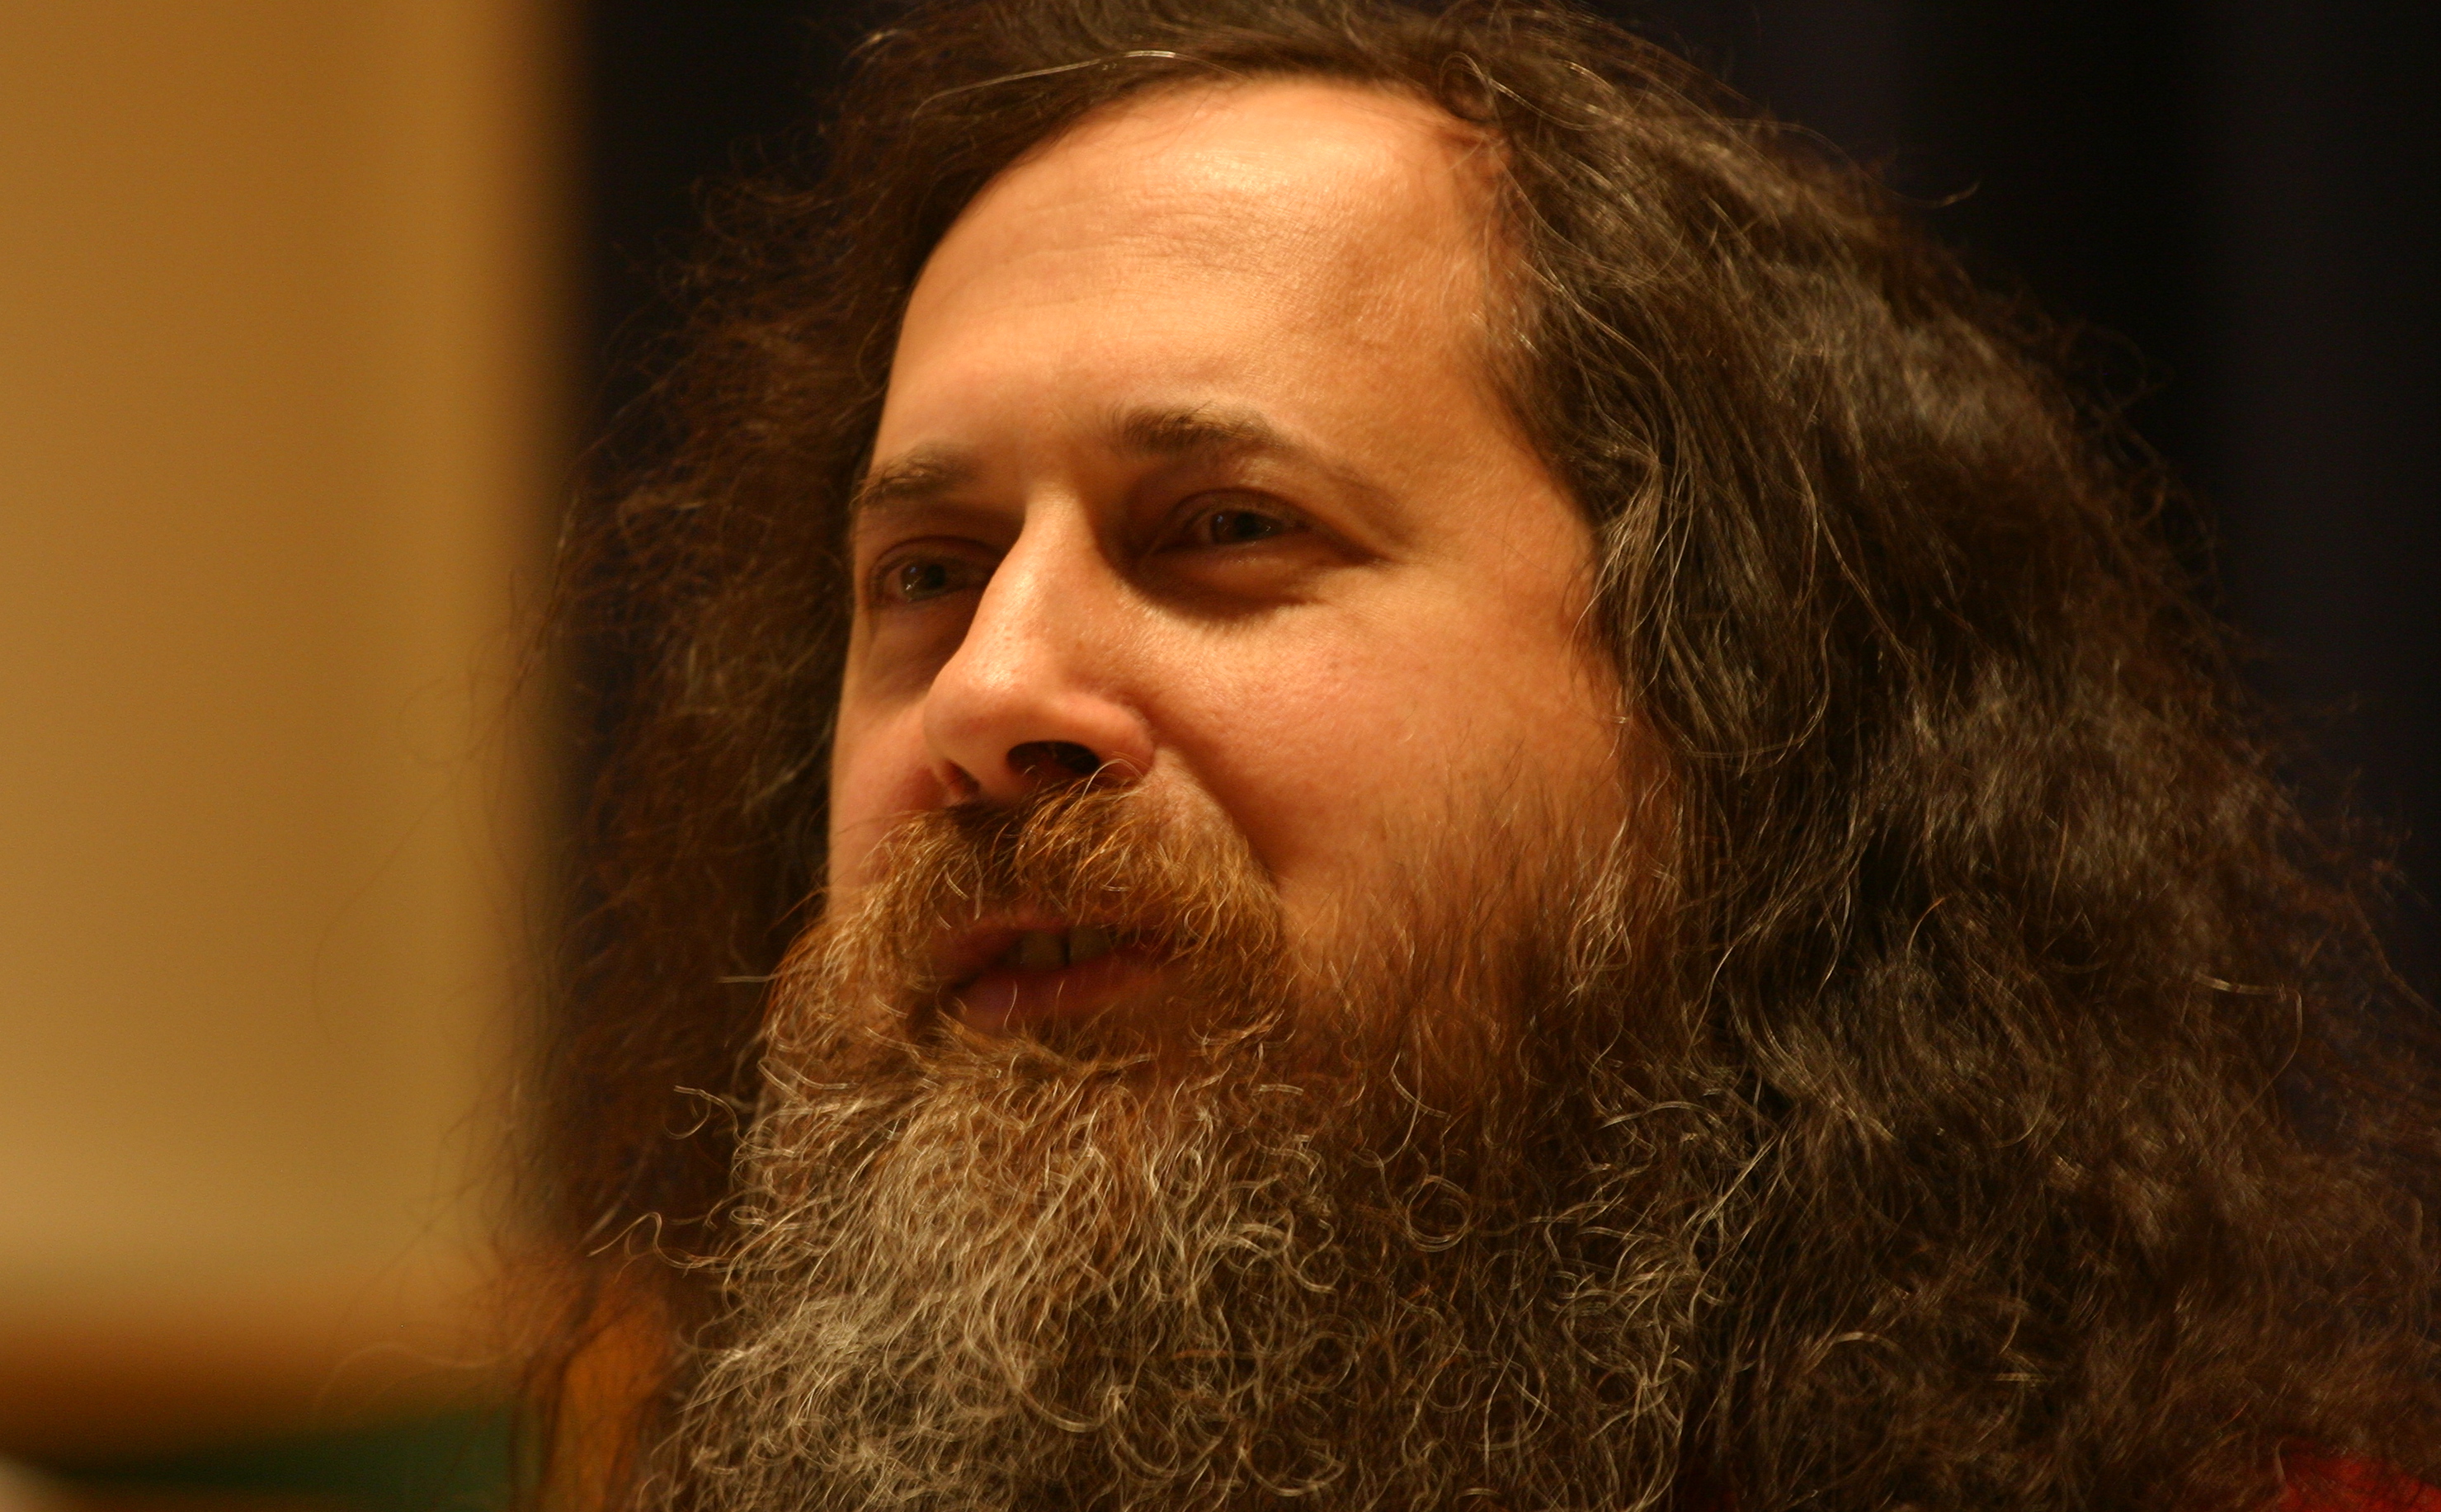 Richard_Stallman_at_Marlboro_College